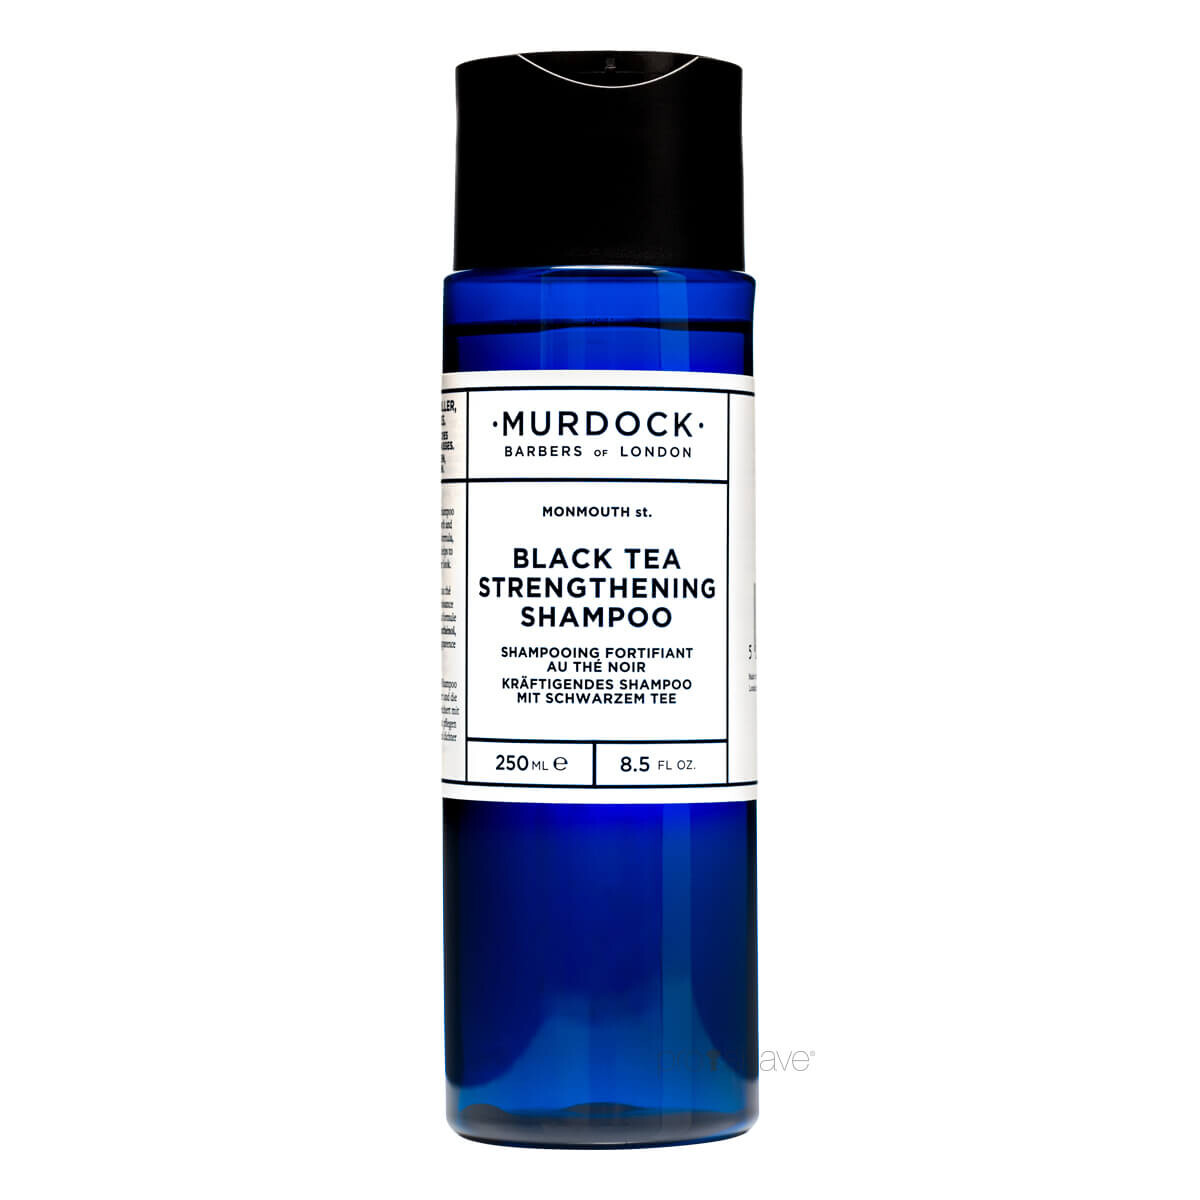 Billede af Murdock Strengthening Shampoo, Black Tea, 250 ml.